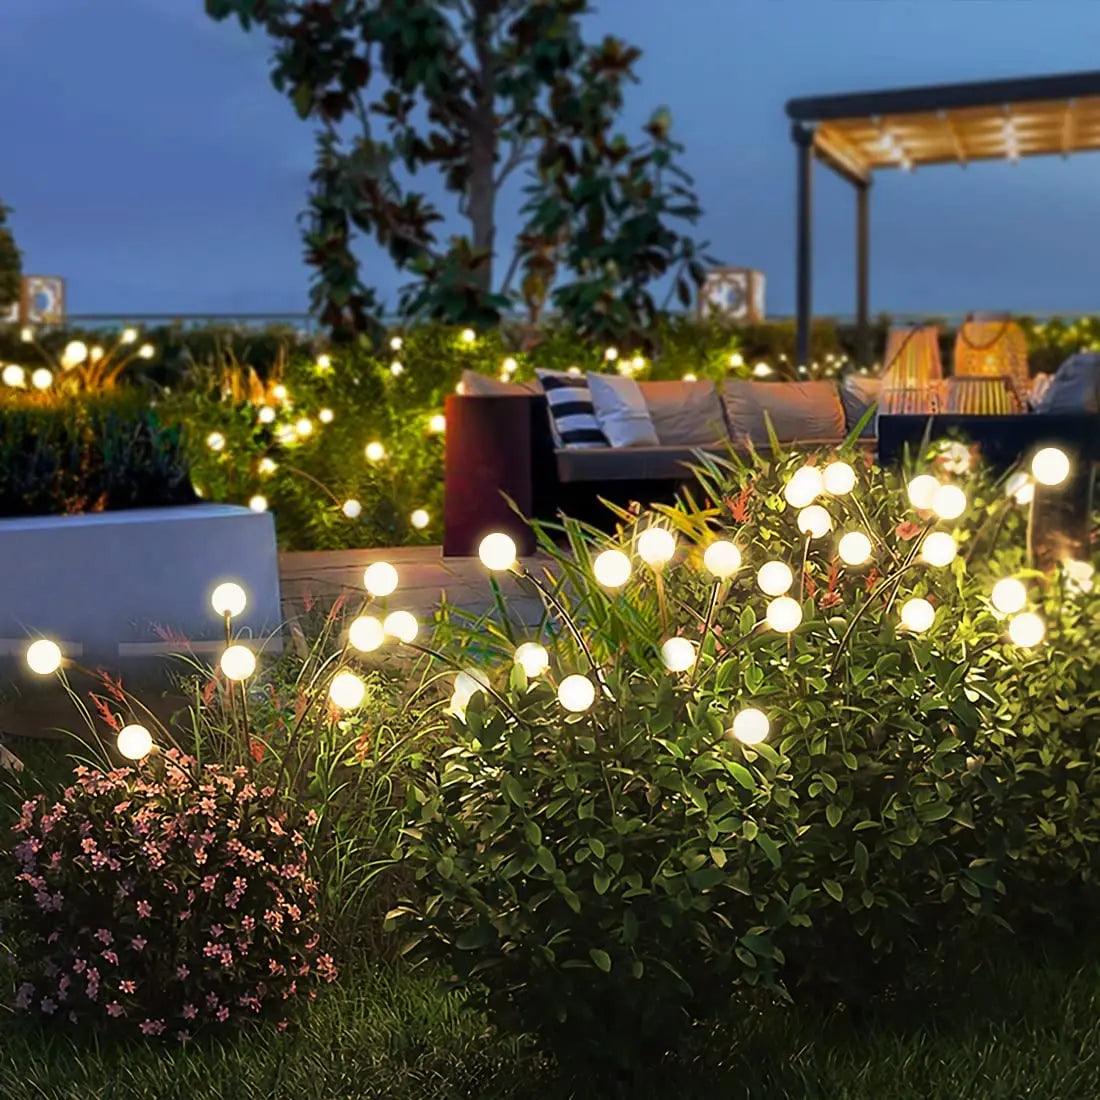 Emissores de luz para jardim (Luminex) - Jardim Belo